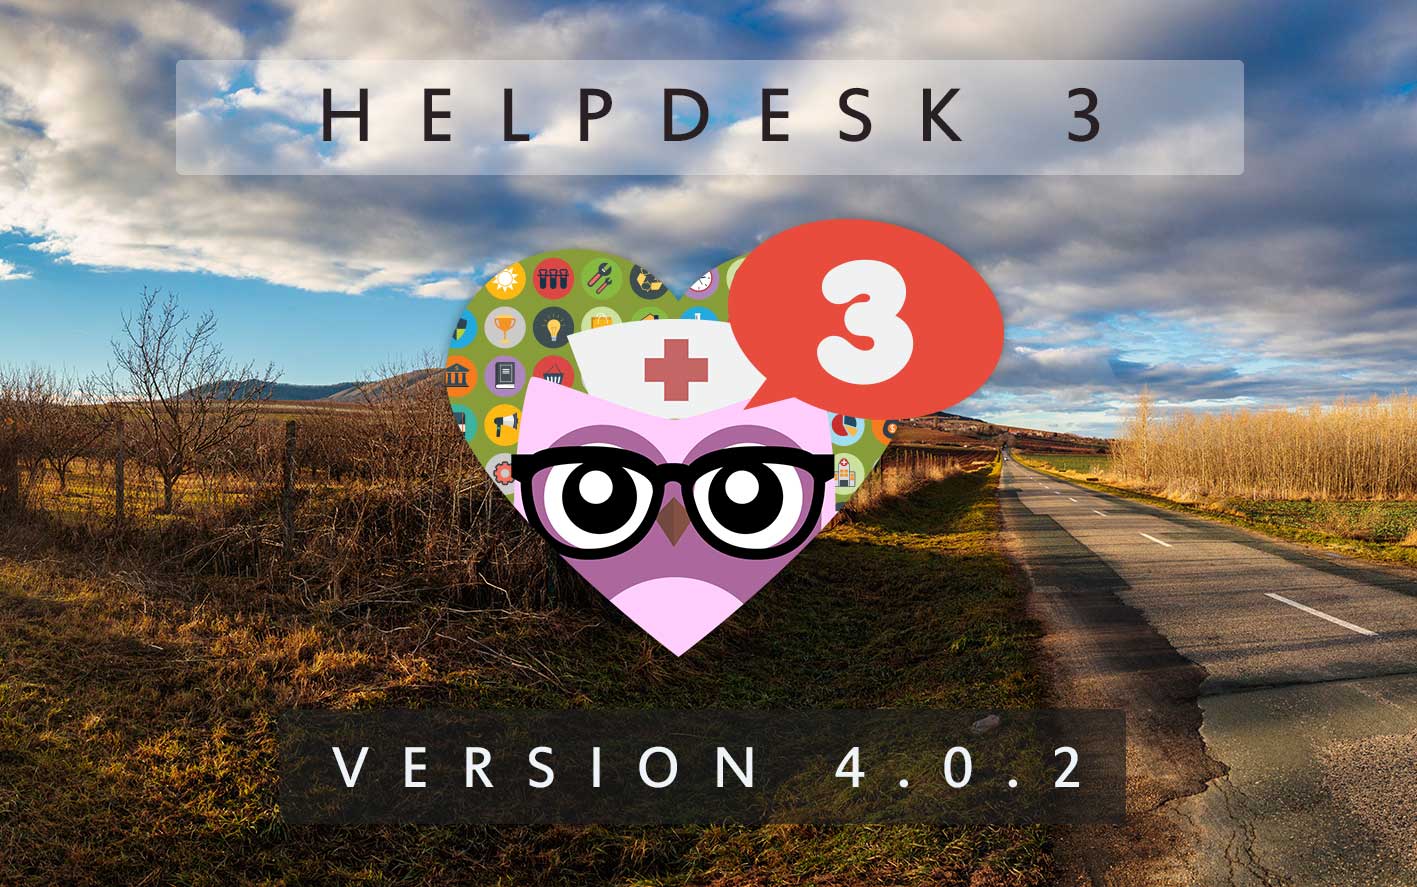 HelpDesk 3 - Version 4.0.2